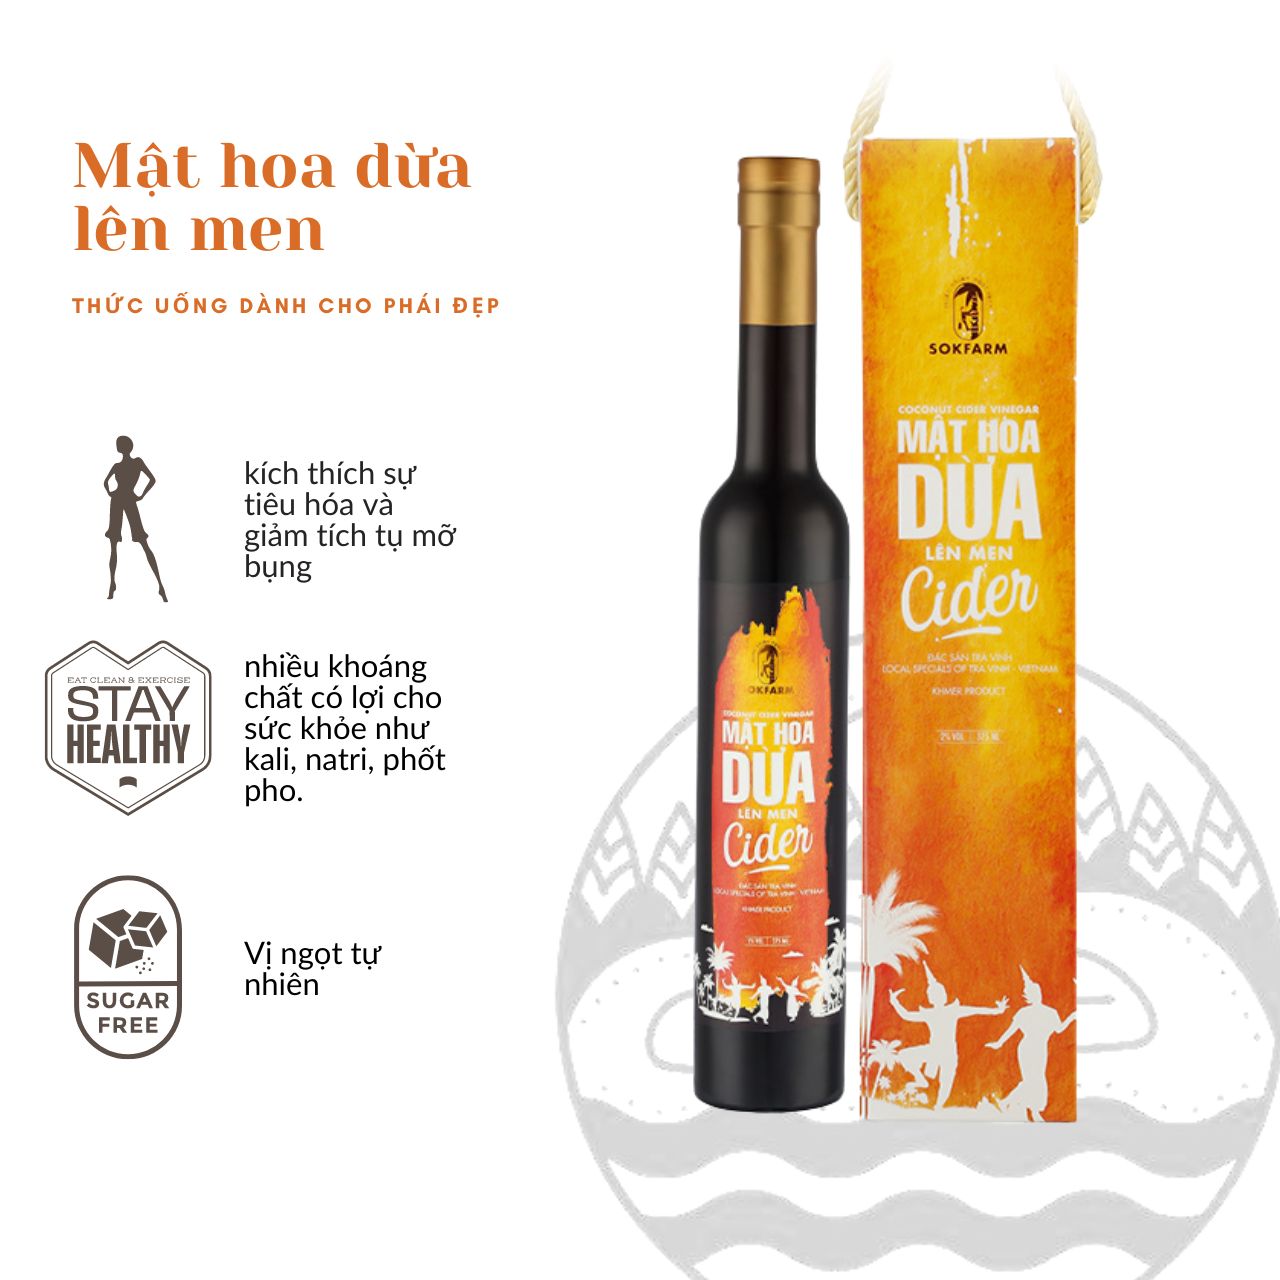 MẬT HOA DỪA LÊN MEN - CIDER - 375ml - Thức uống dành cho phái đẹp